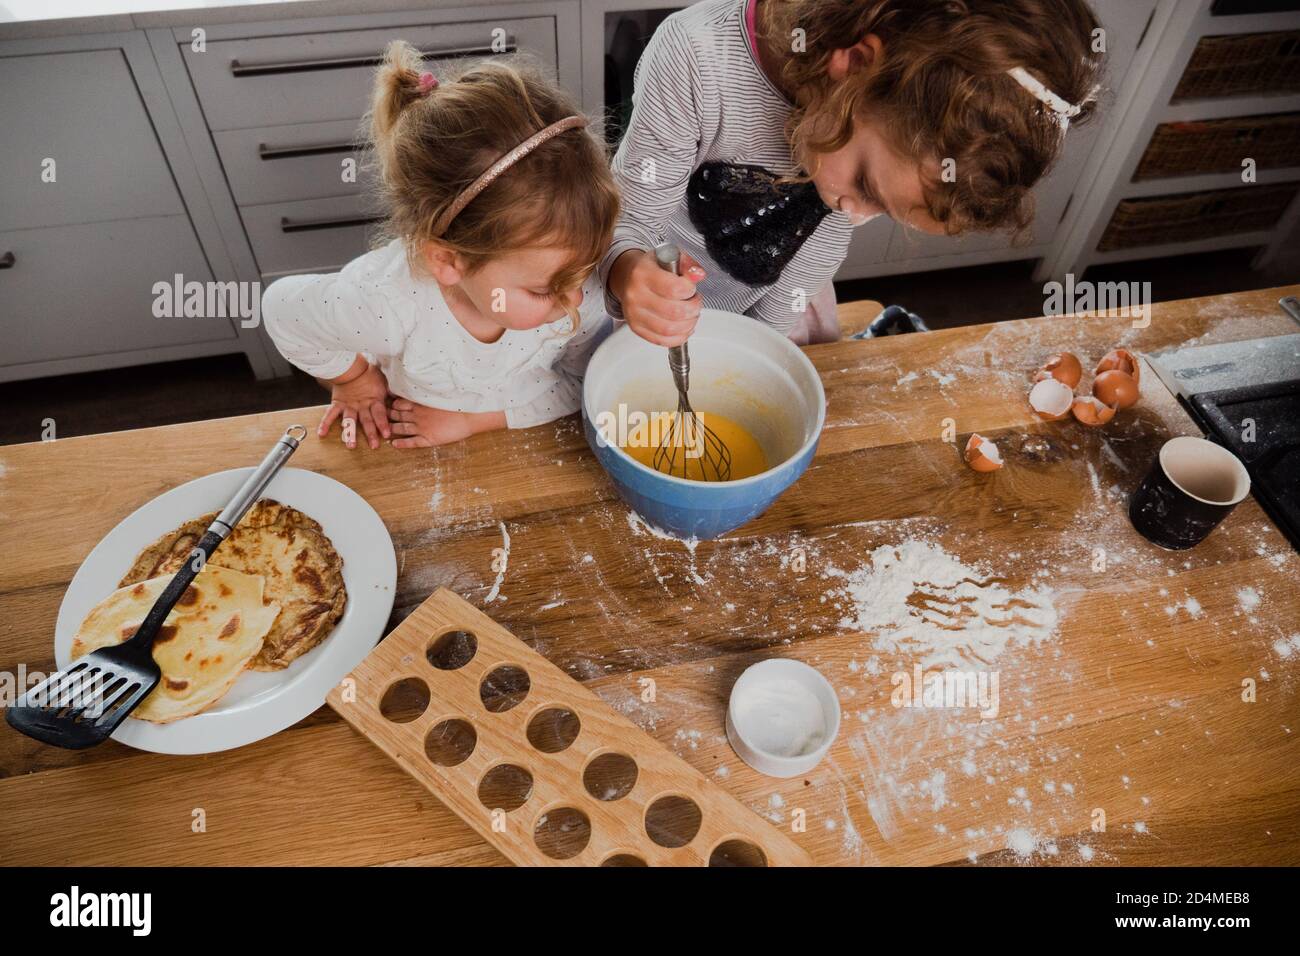 Les sœurs caucasiennes cuisent ensemble dans la cuisine, vue de dessus Banque D'Images